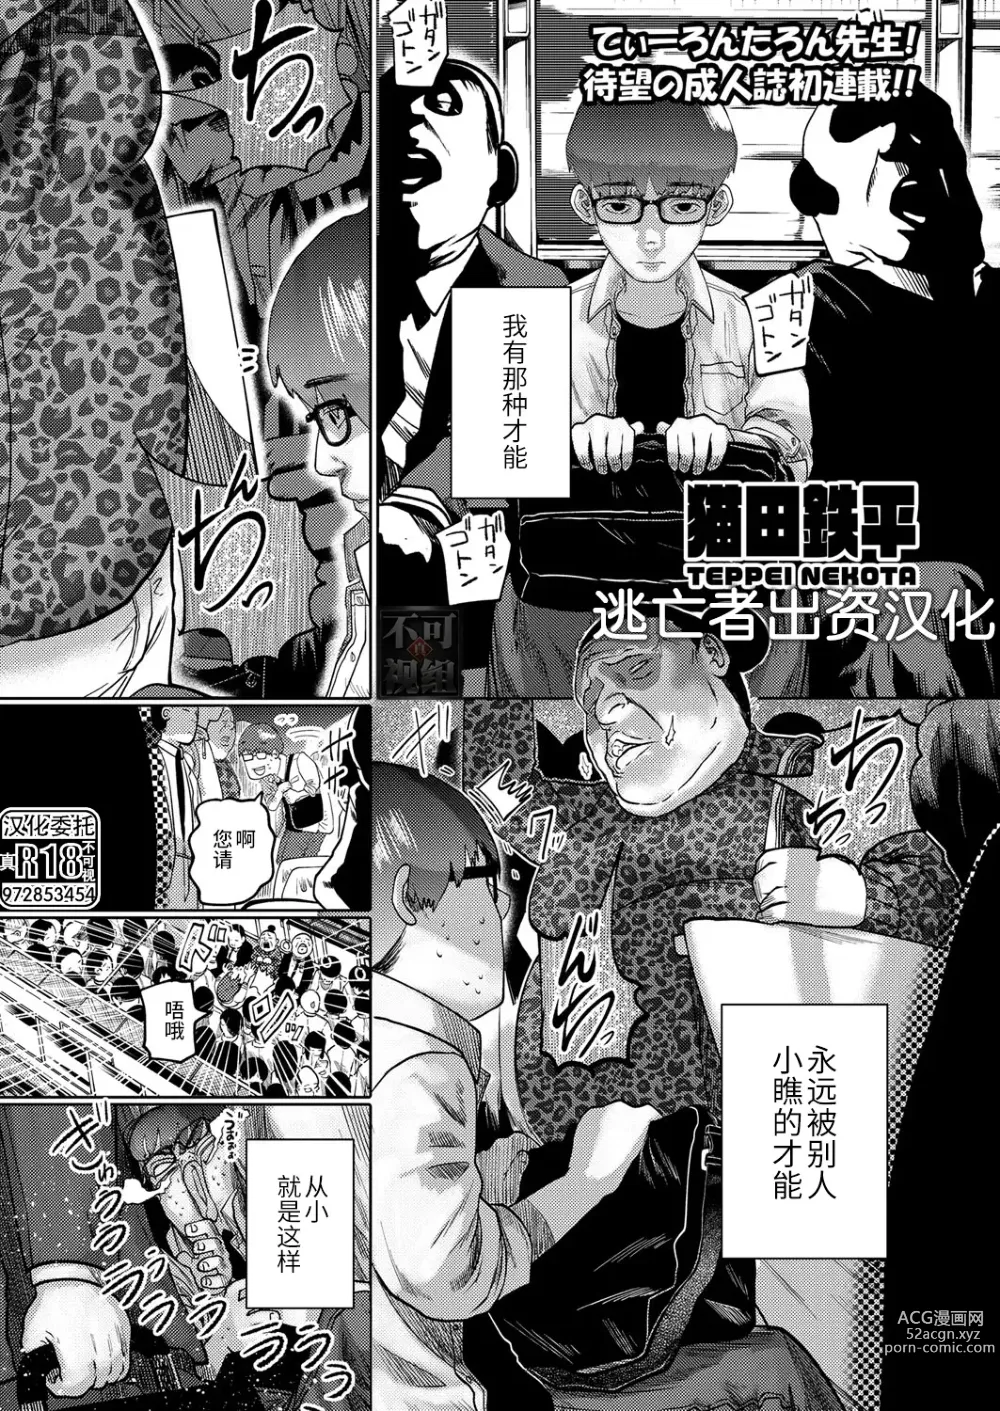 Page 1 of manga ねーうしとらうー! #1-5